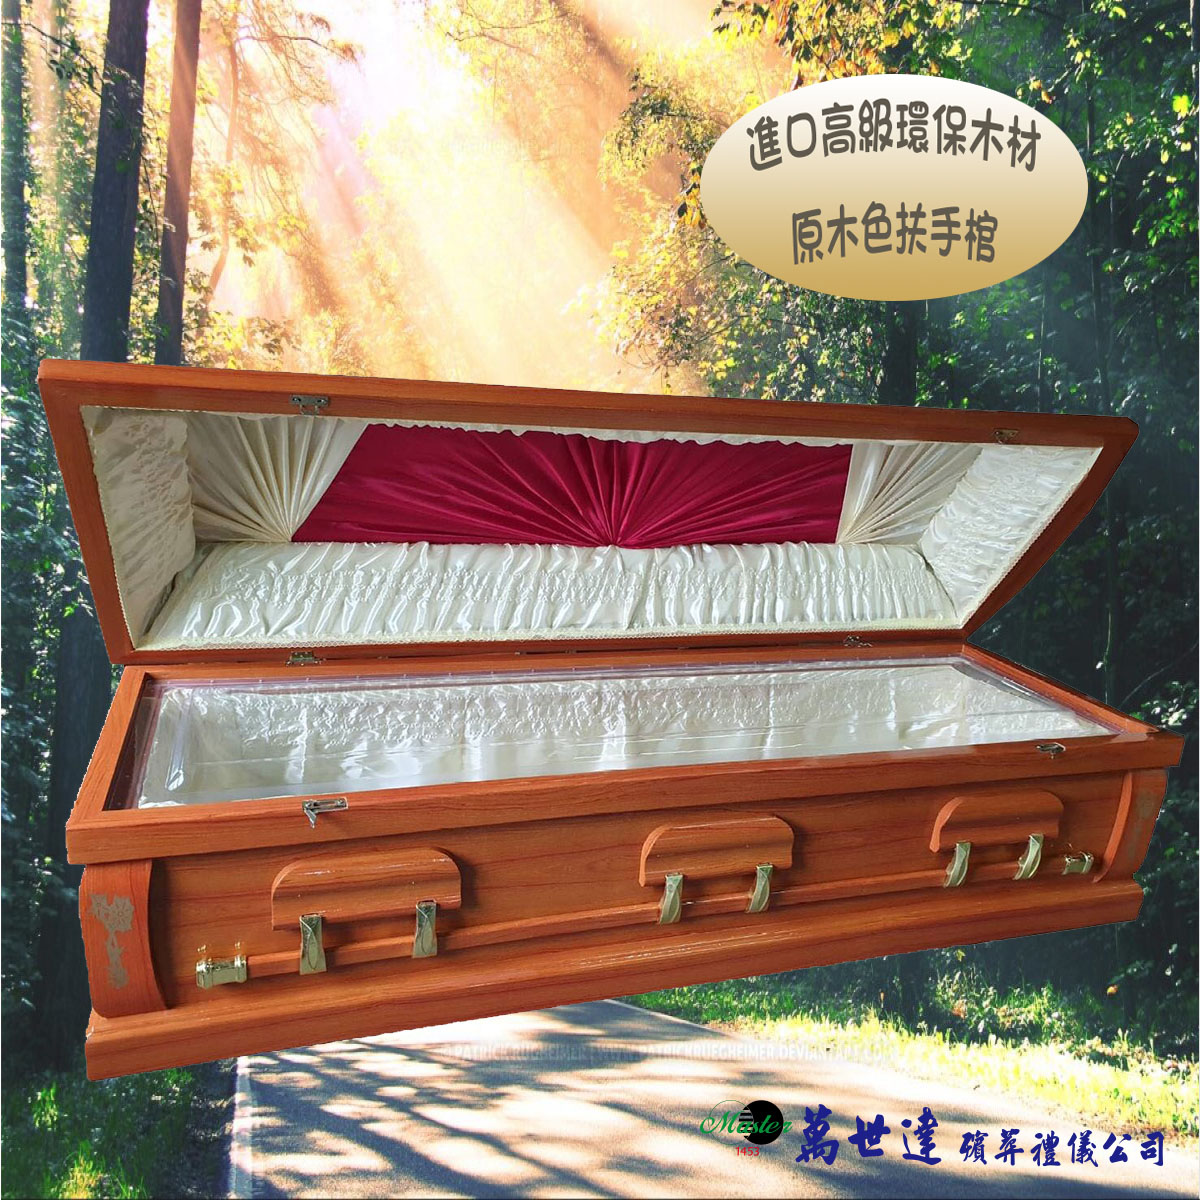 【入殮出】十字架基督天主火化平蓋原木色扶手棺2.1尺